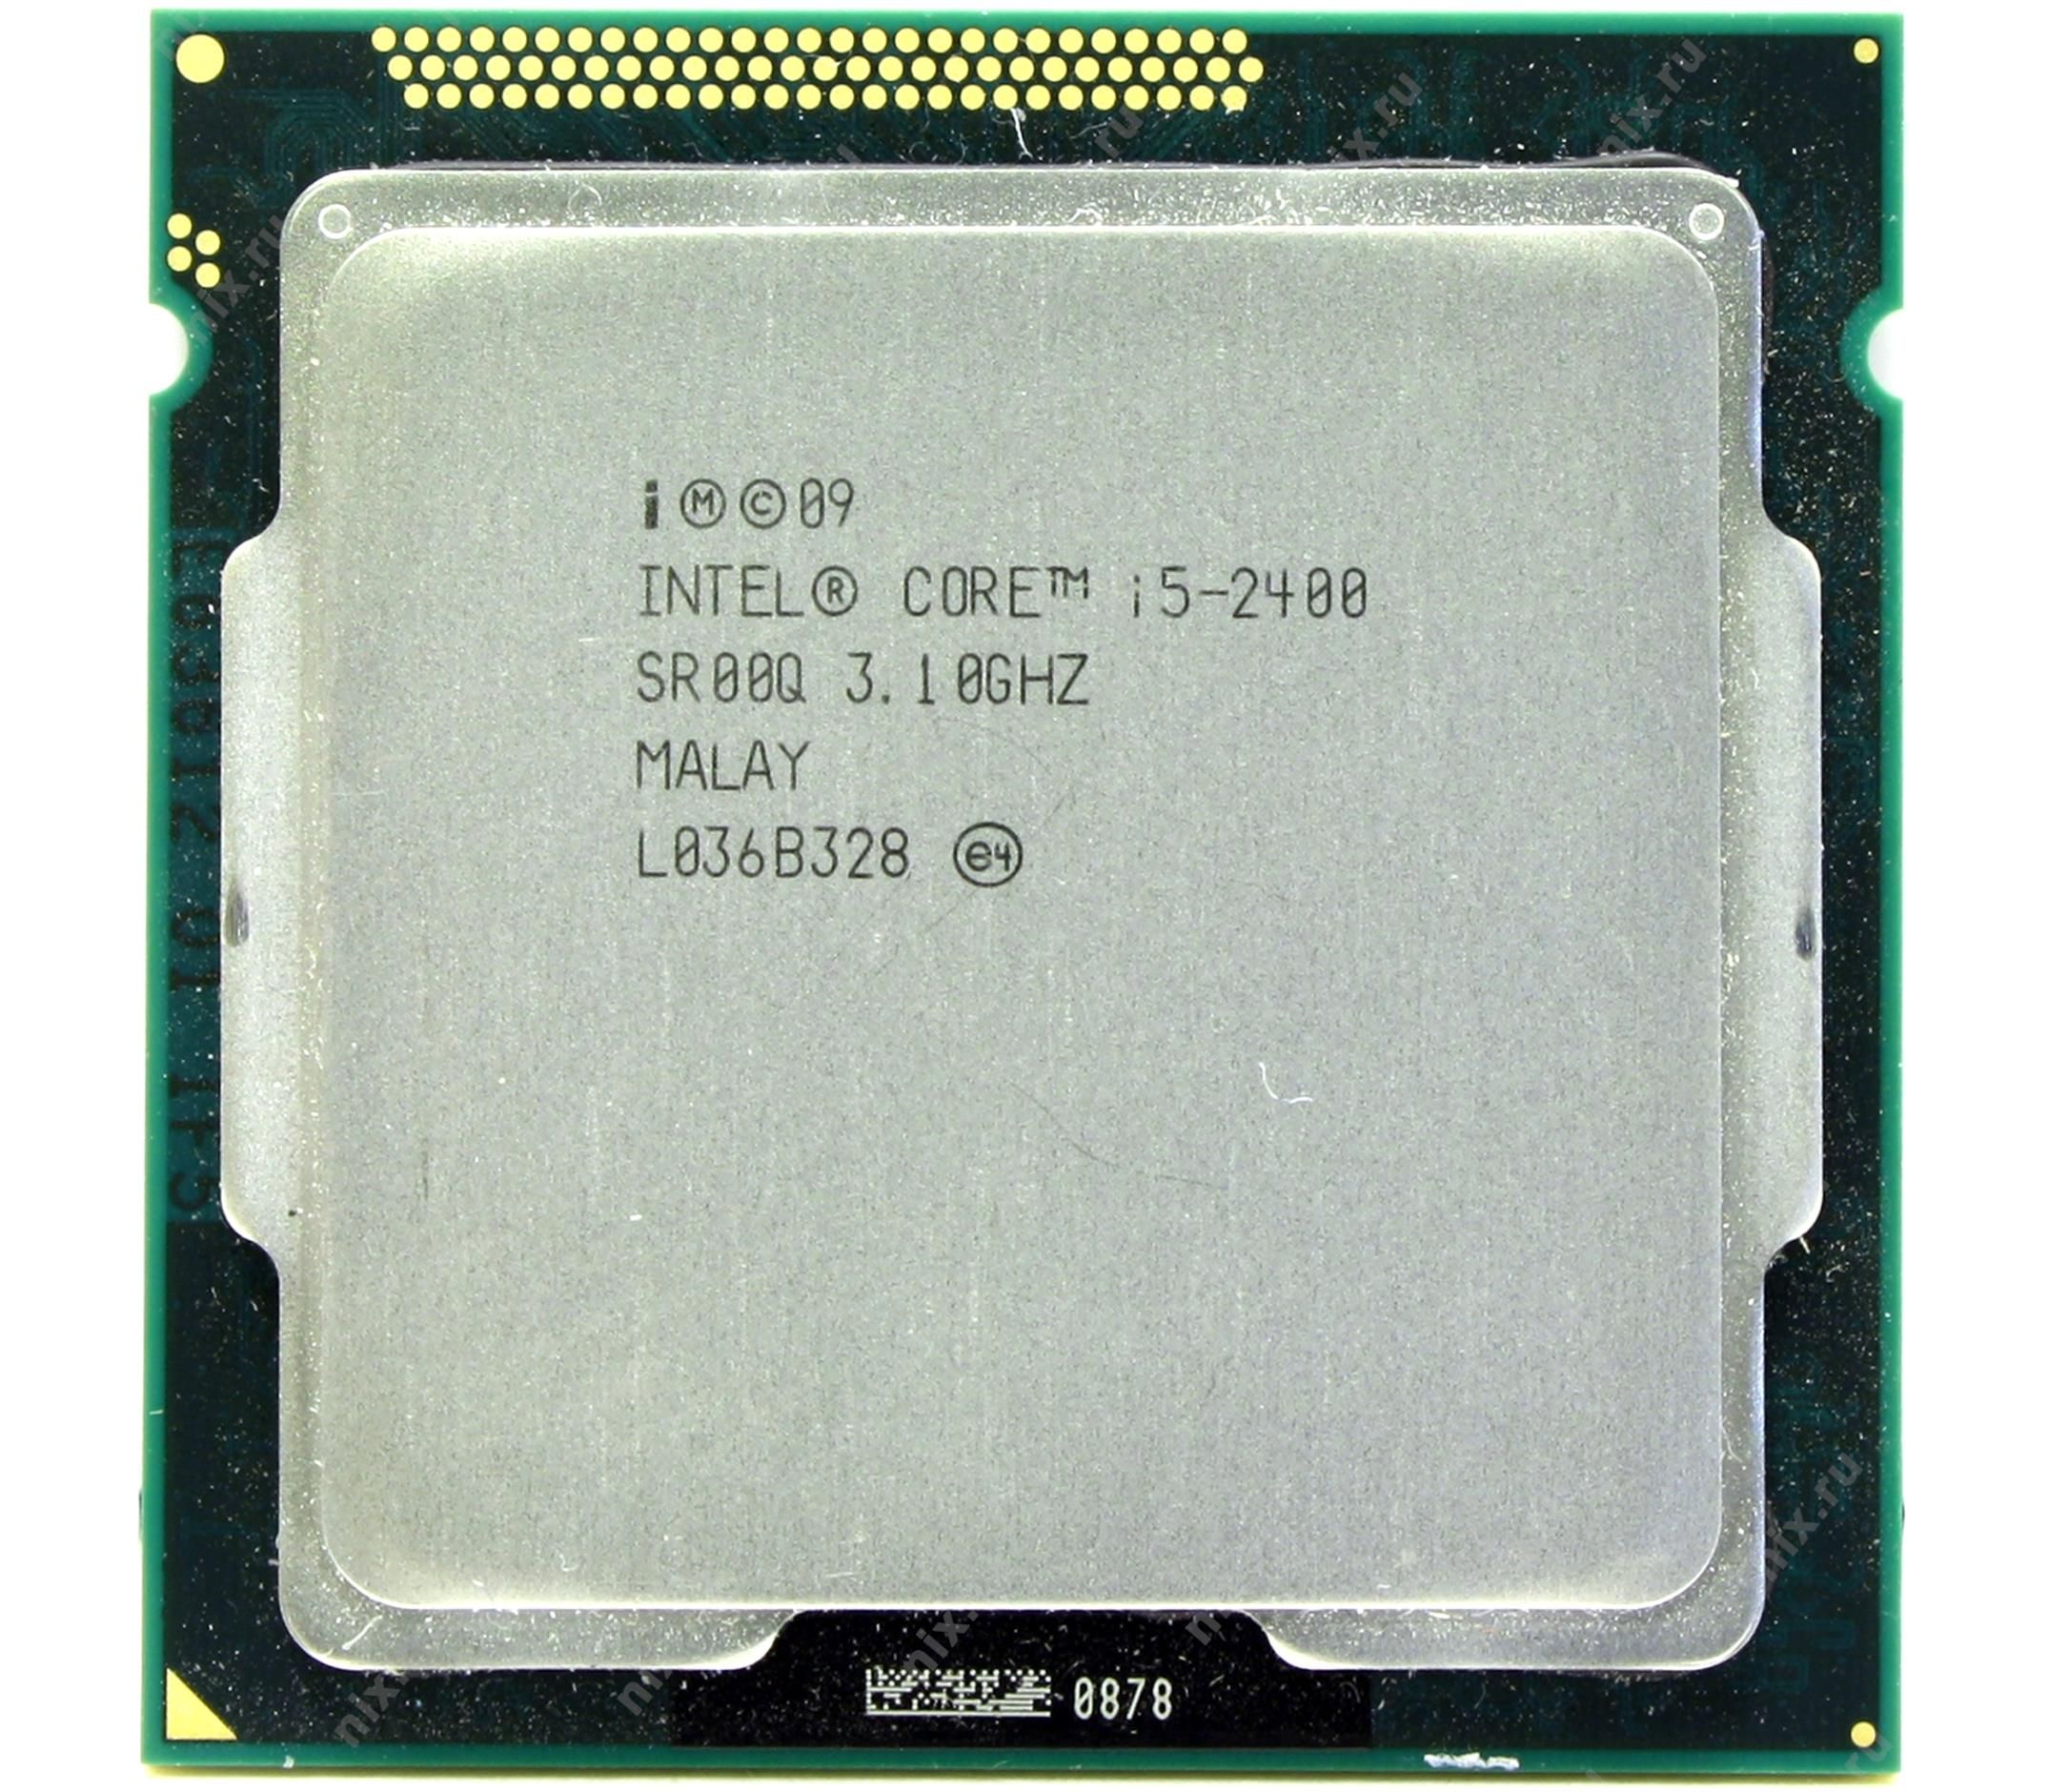 купить Процессор Intel 1155 i5-2400 6M, 3.10 GHz HD2000 oem 4 Core Sandy Bridge  в Алматы